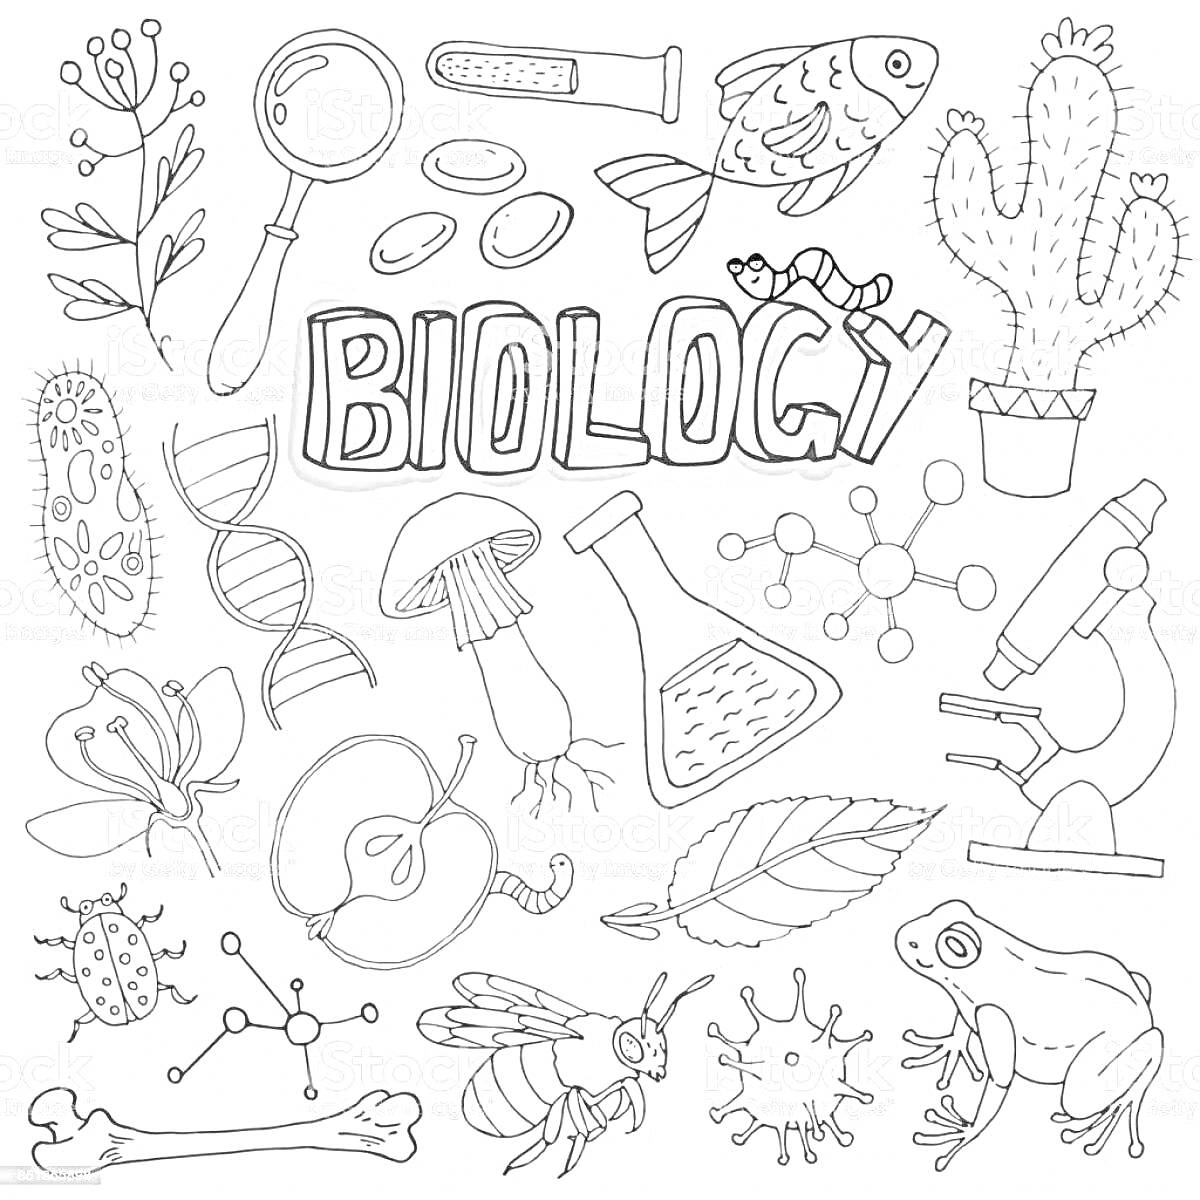 На раскраске изображено: Биология, Увеличительное стекло, Бактерии, Таблетки, Рыба, Растения, ДНК, Грибы, Молекулы, Микроскоп, Бабочка, Яблоко, Кости, Жуки, Наука, Природа